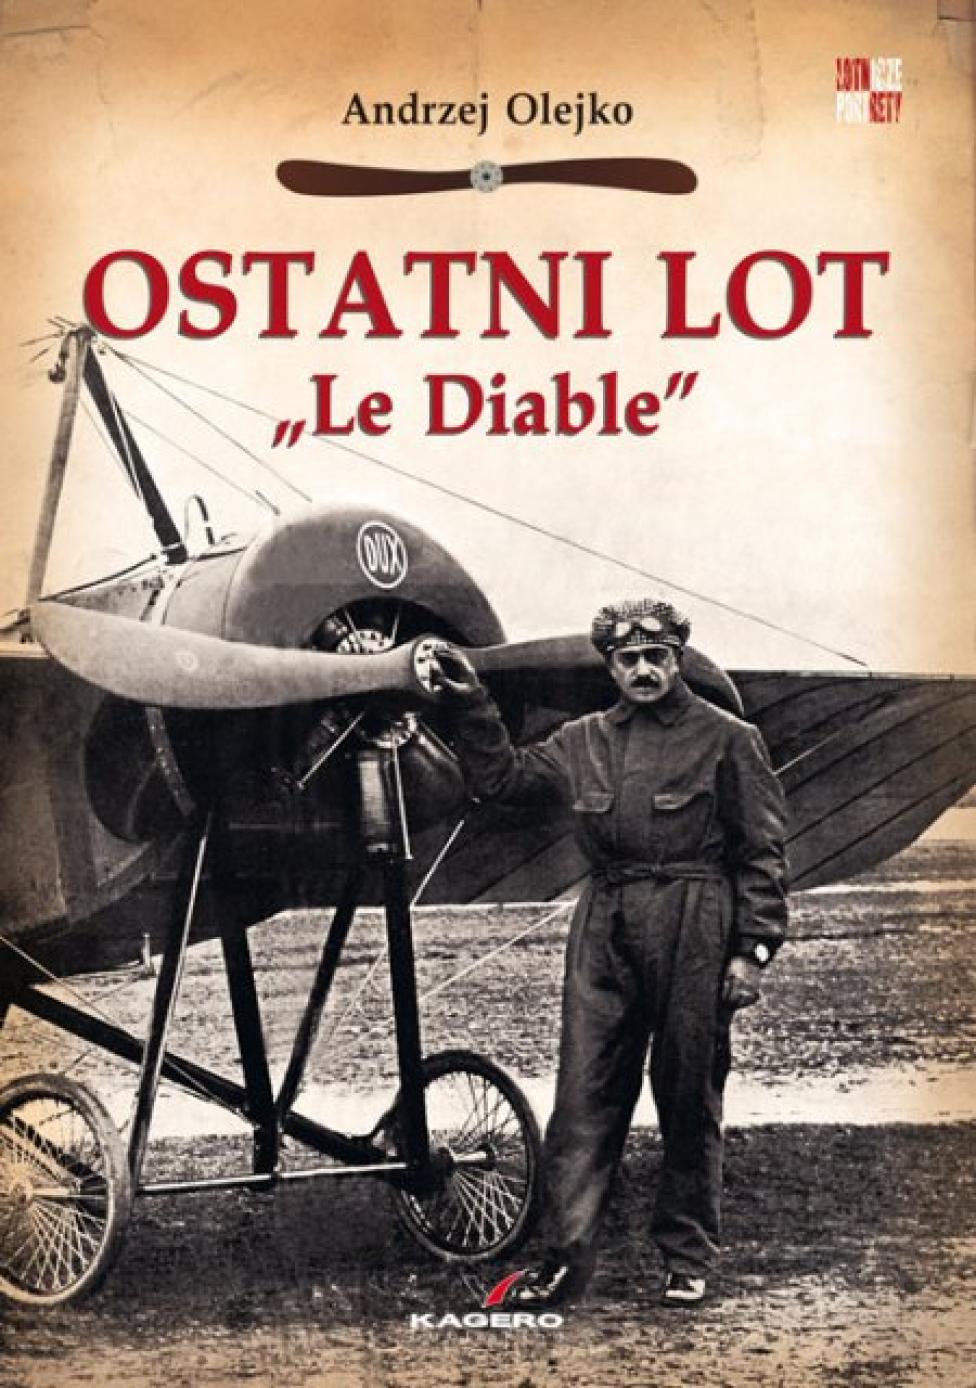 Książka "Ostatni lot" (fot. Kagero Publishing)